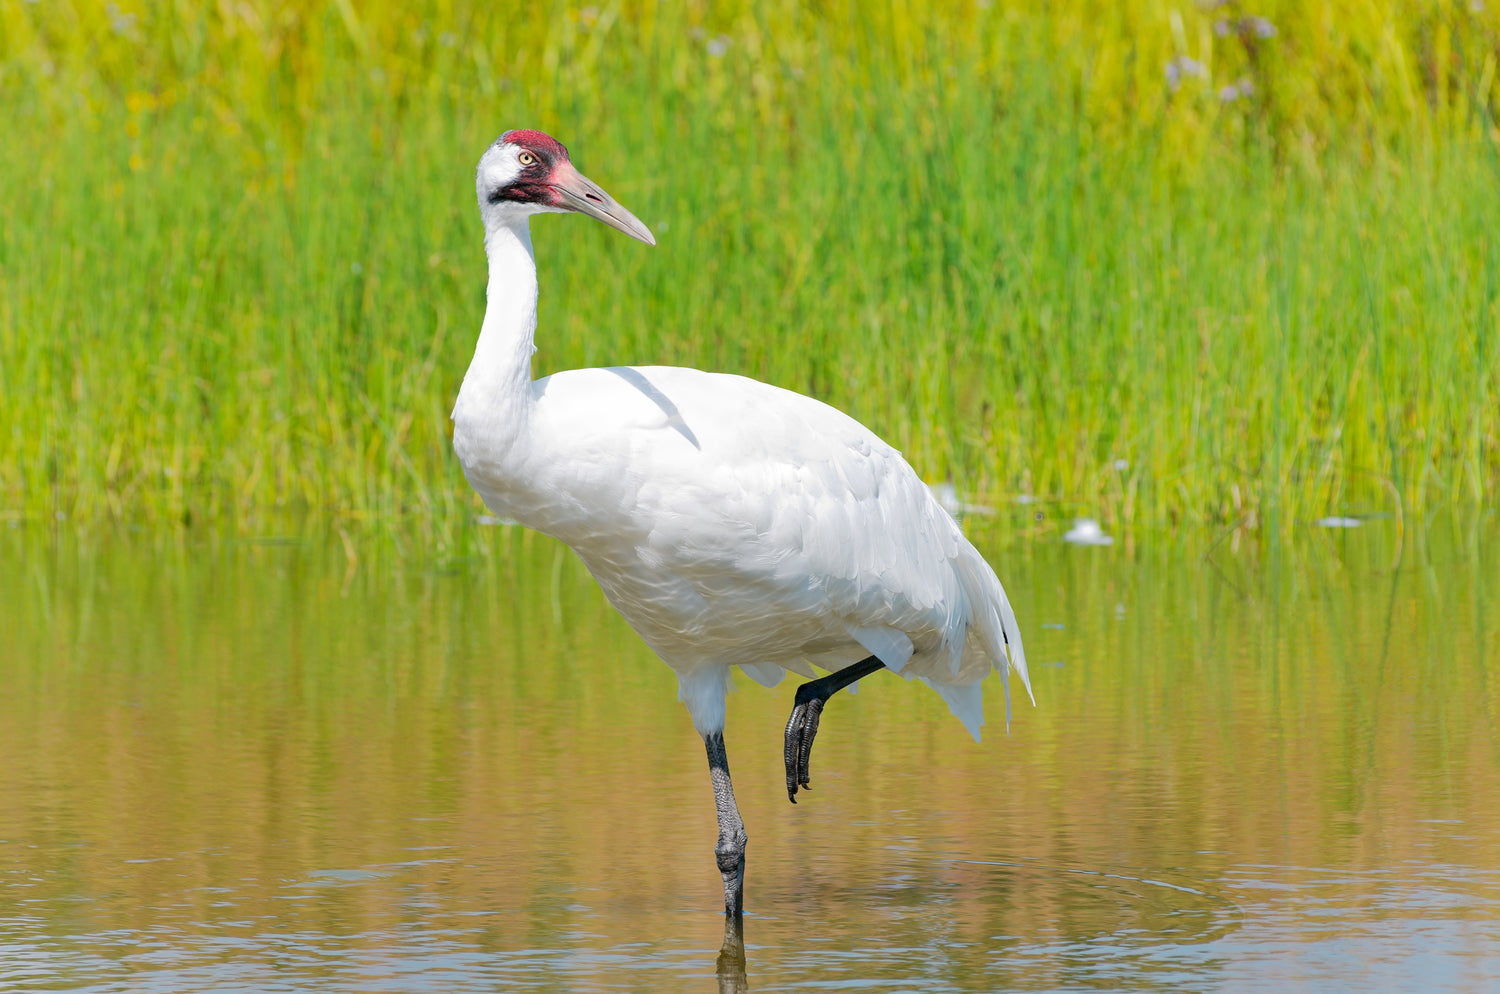 Whooping Crane wading through a marsh